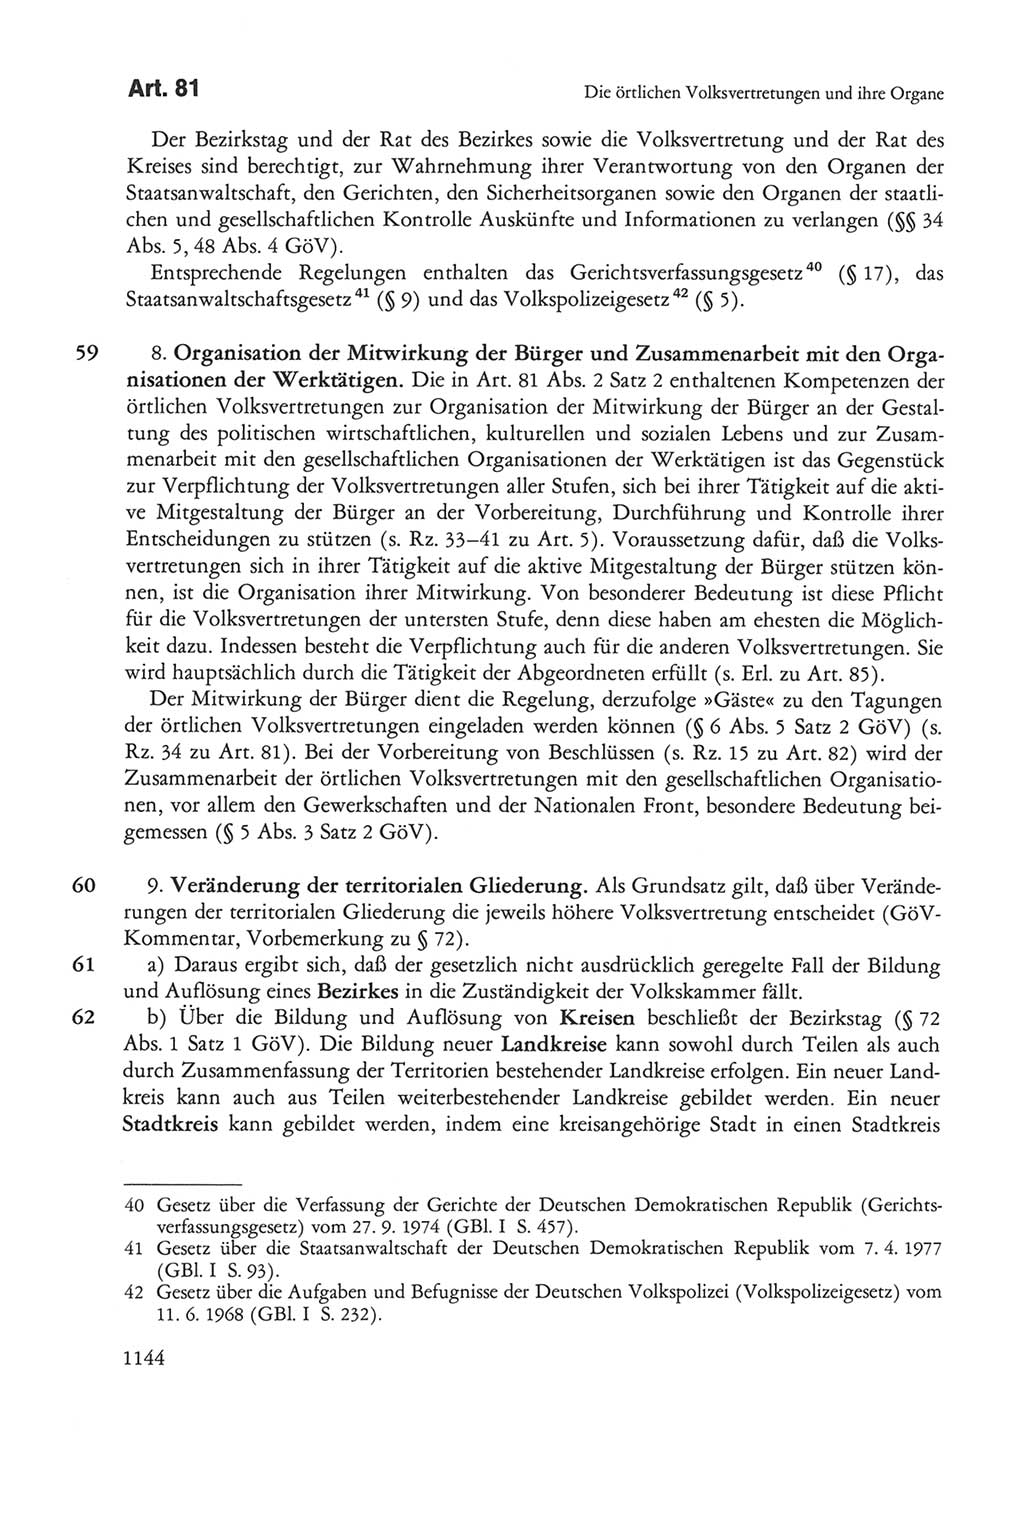 Die sozialistische Verfassung der Deutschen Demokratischen Republik (DDR), Kommentar mit einem Nachtrag 1997, Seite 1144 (Soz. Verf. DDR Komm. Nachtr. 1997, S. 1144)